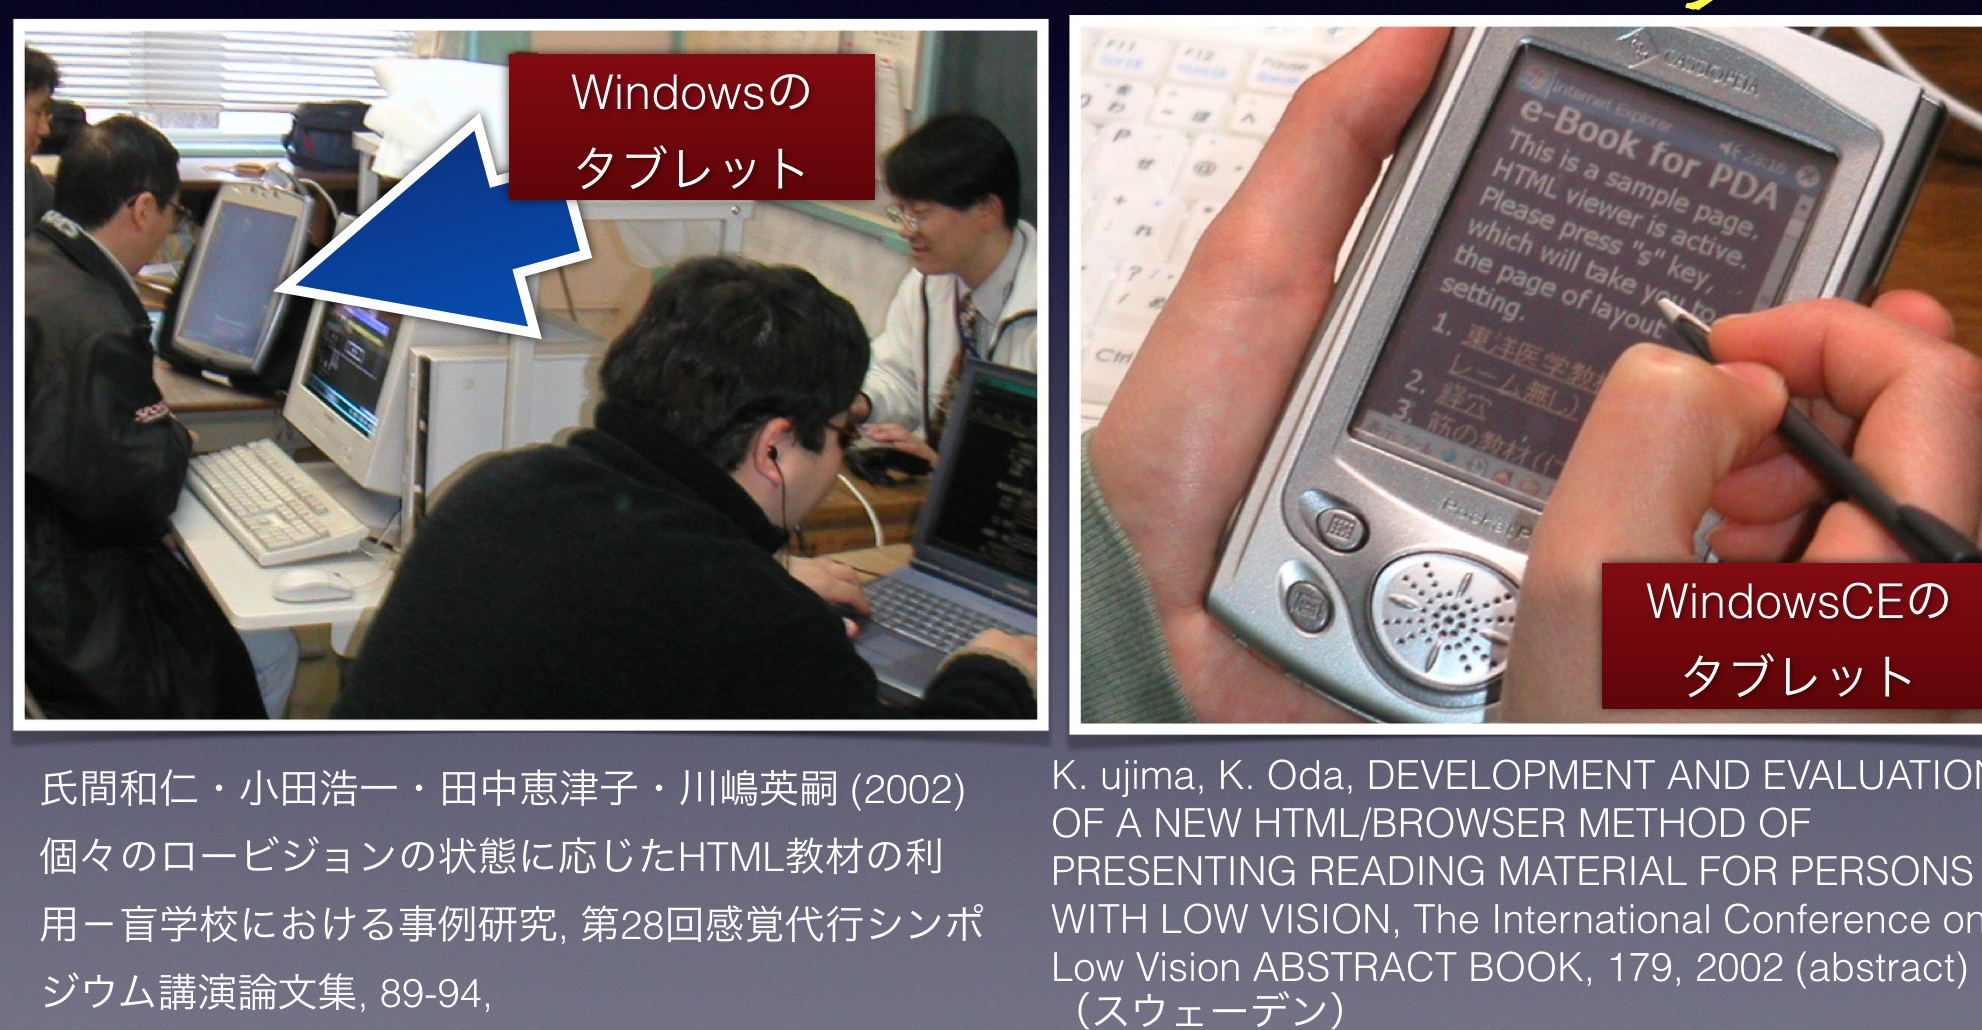 windows tabletとwindows ce　PDAを使っている写真